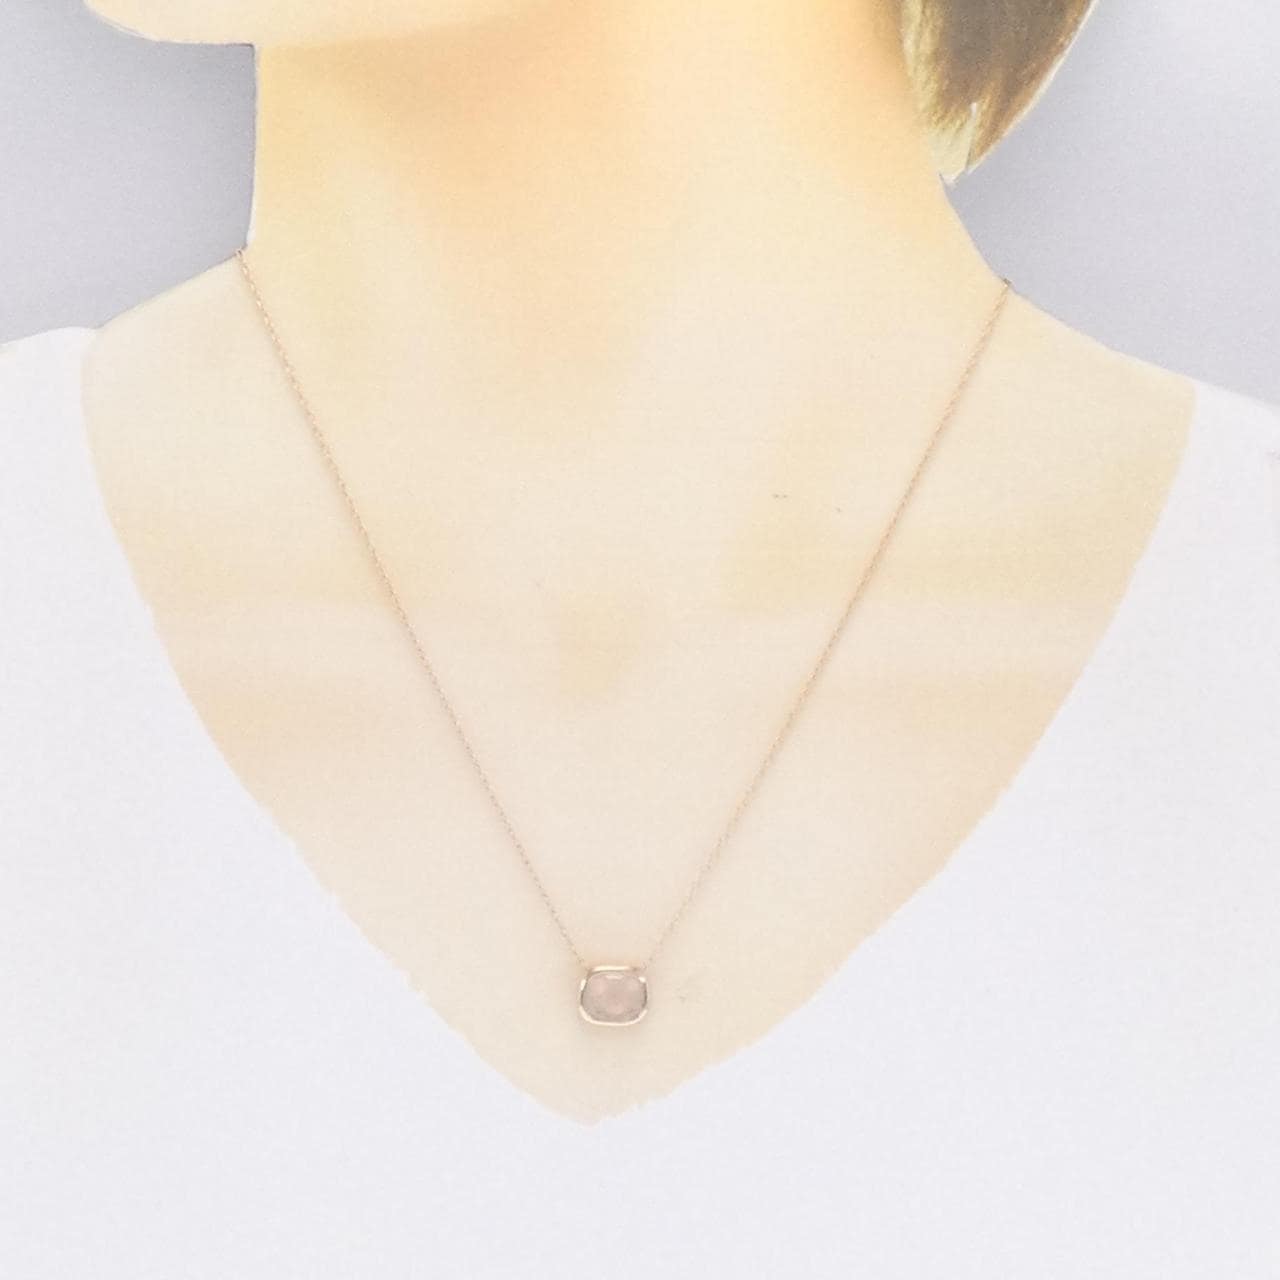 Veretta Ottava rose Quartz necklace